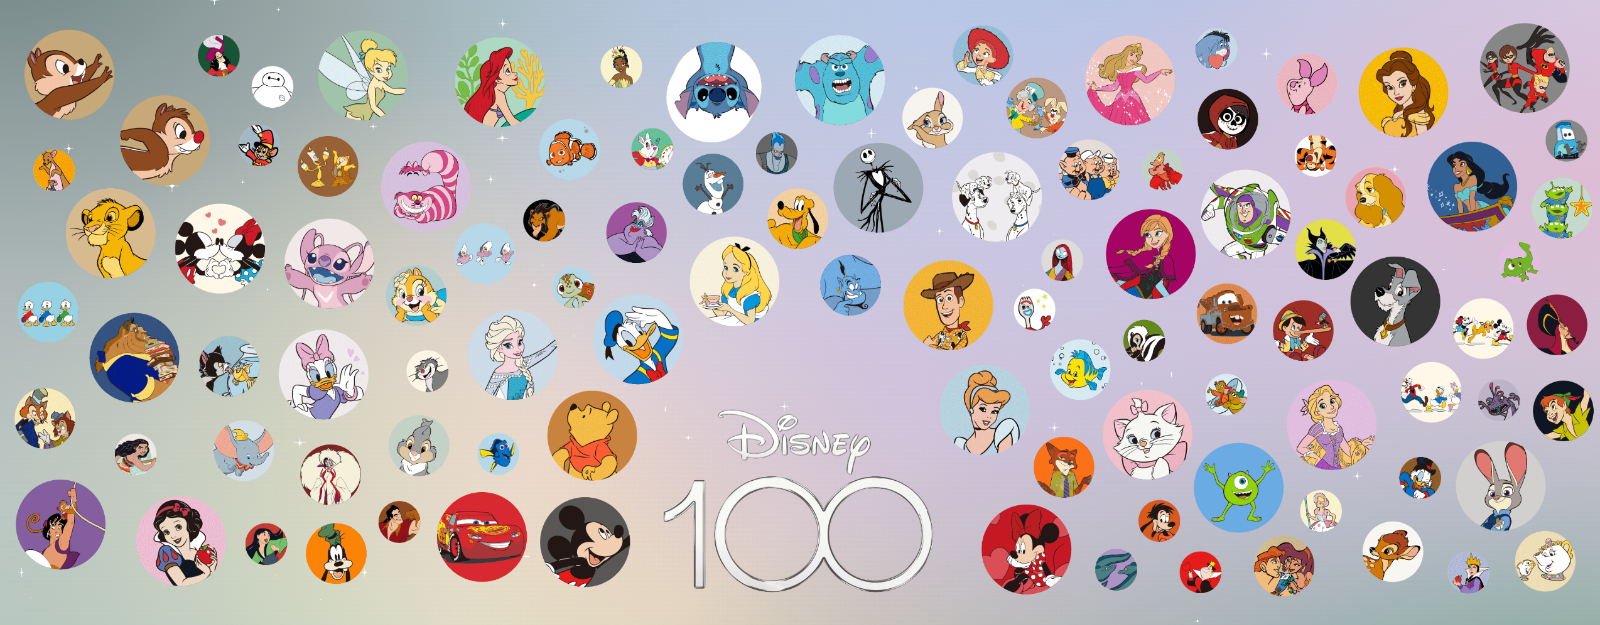 Disney JAPAN 100 Year of Wonder Samantha thavasa 100 Hand Bag FAladin & Abu